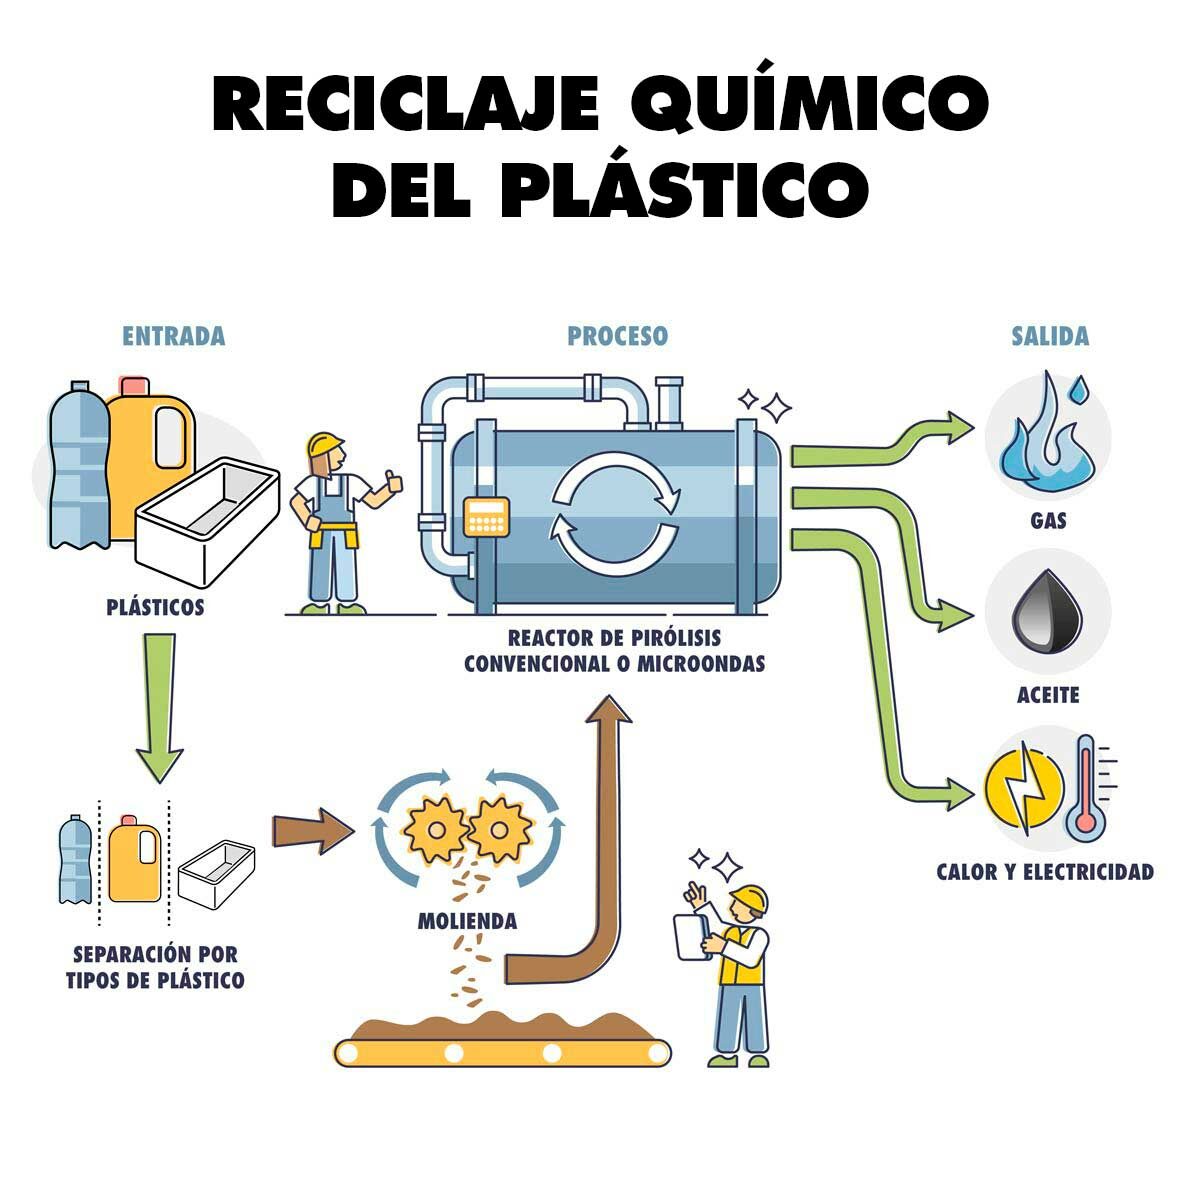 Planta de reciclaje químico: cómo funciona